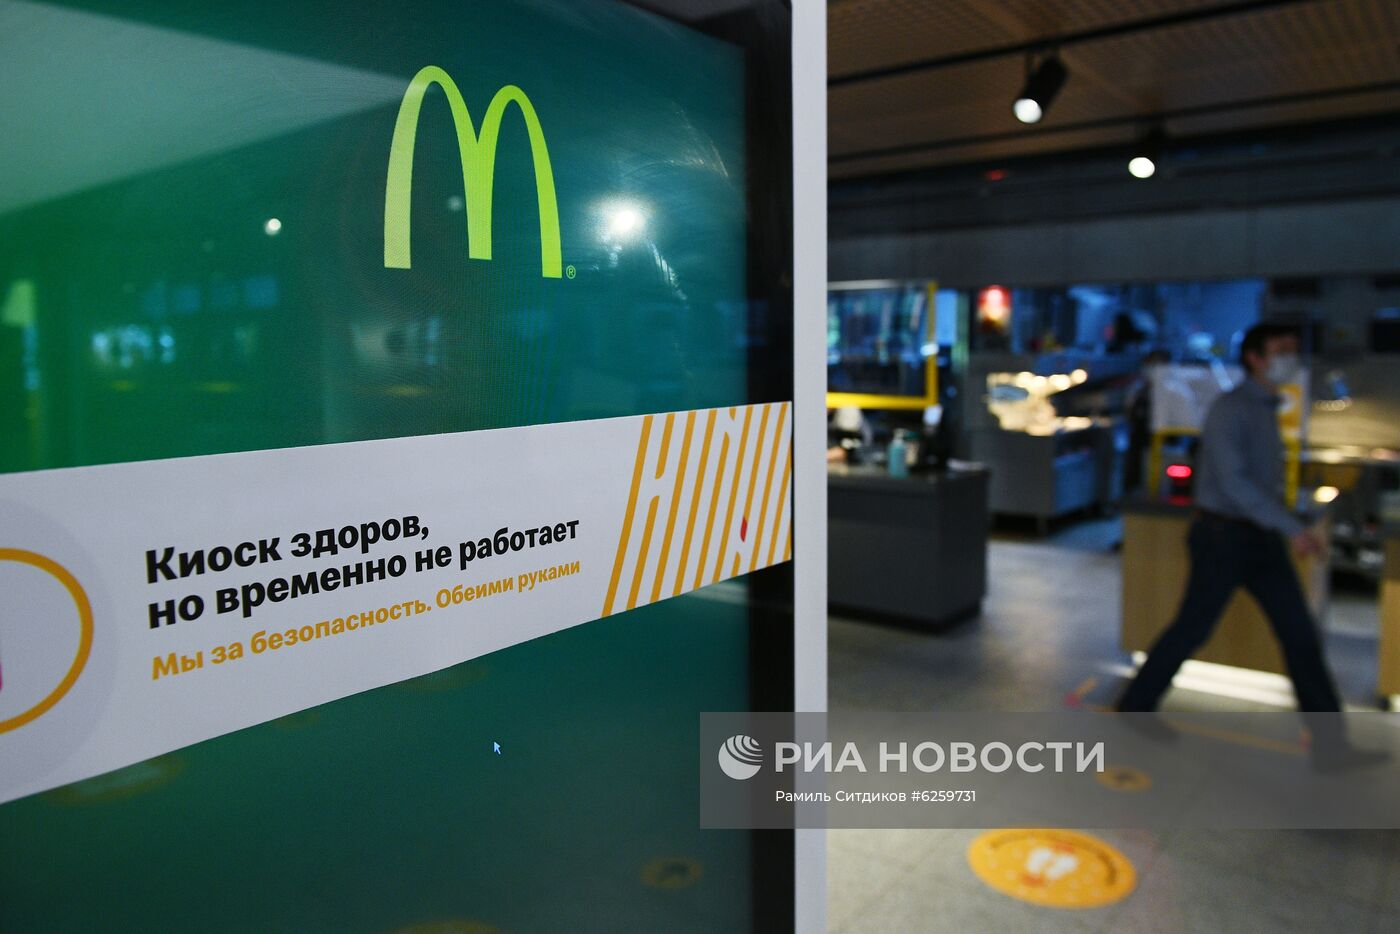 Подготовка к открытию ресторана "Макдоналдс" в Москве